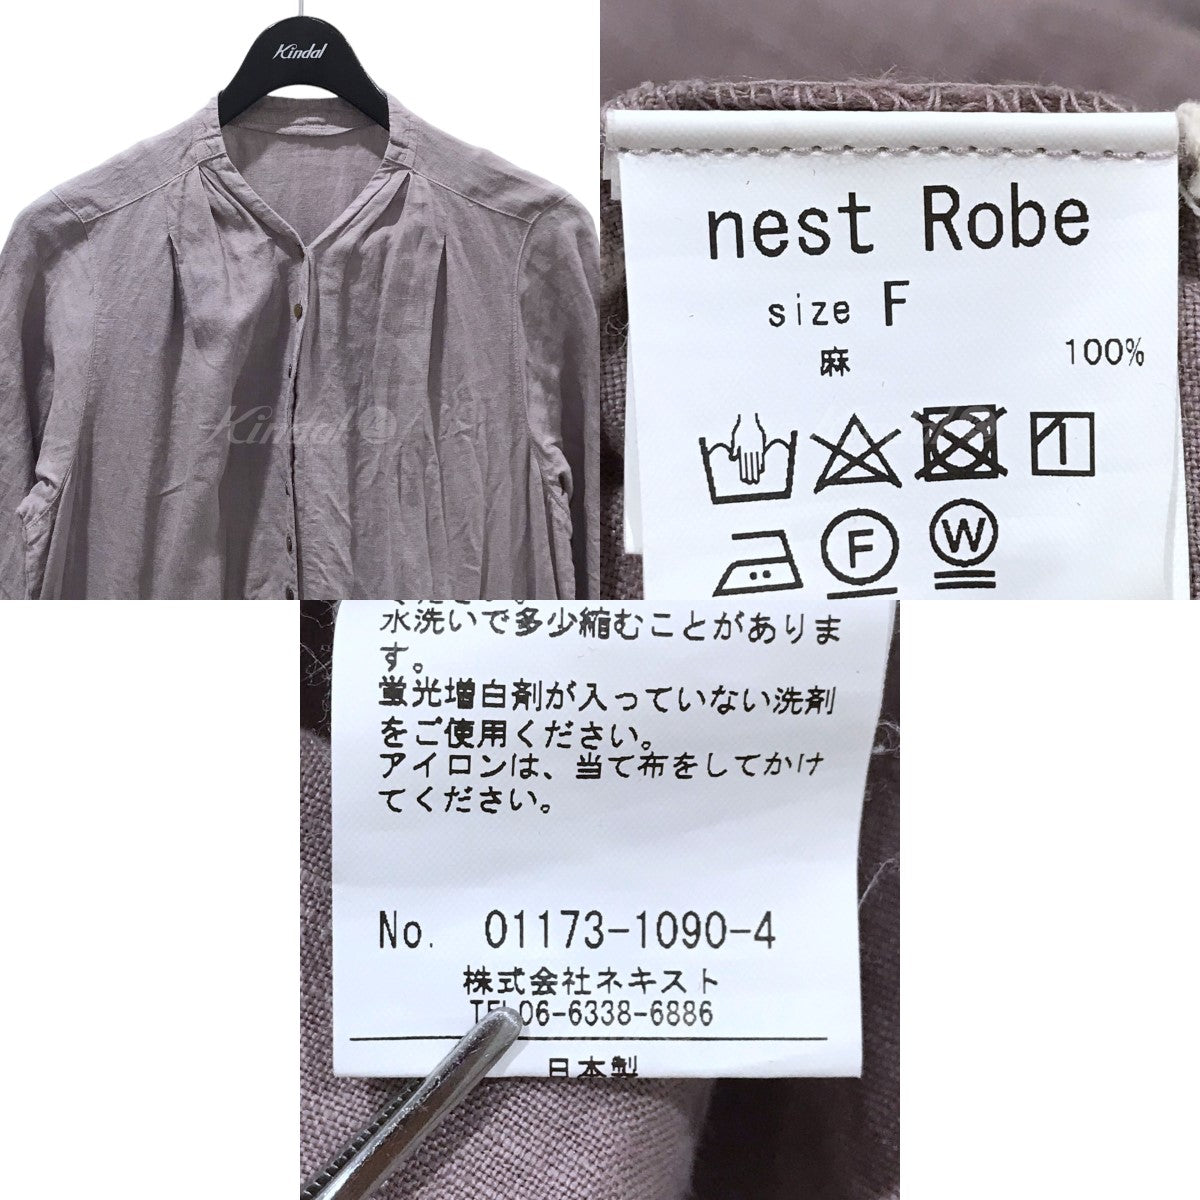 nest Robe(ネストローブ) リネンYネックワンピース 01173-1090 01173 